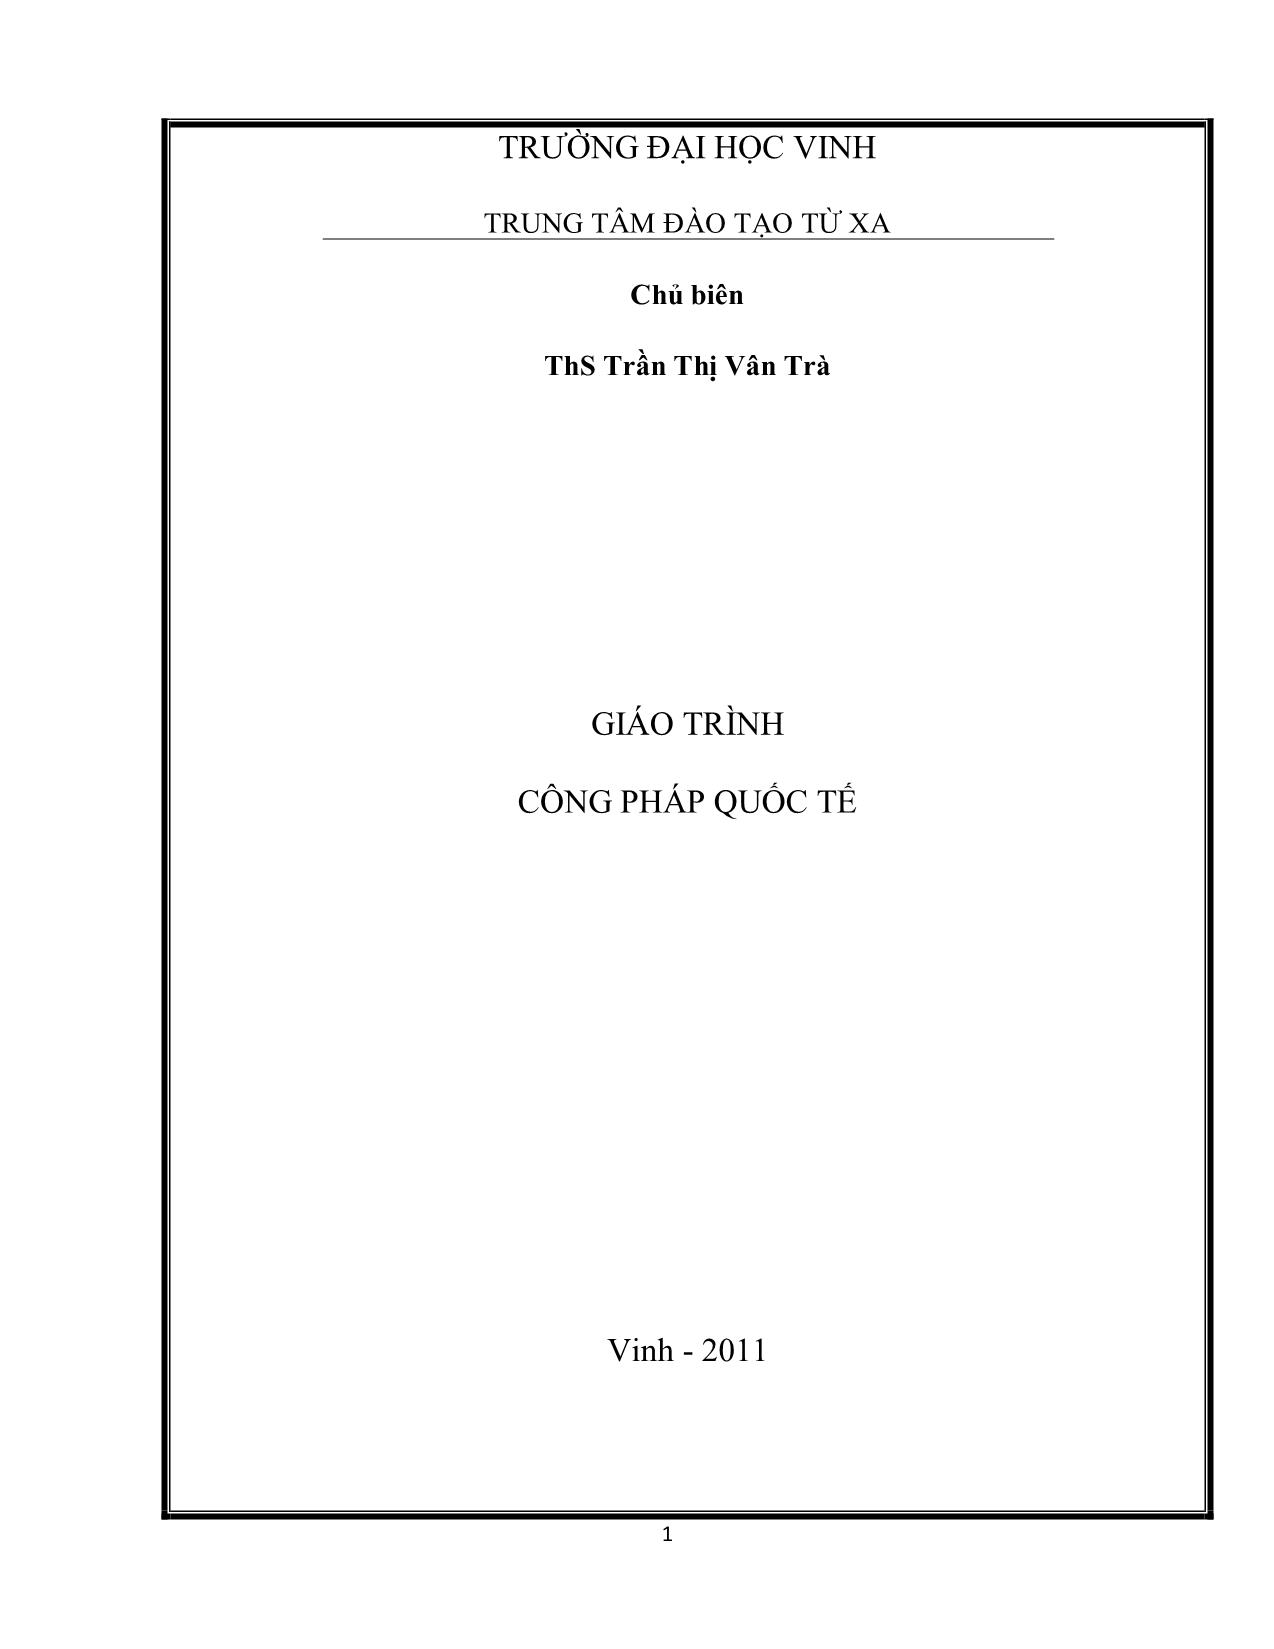 Giáo trình Công pháp quốc tế (Phần 1) trang 1